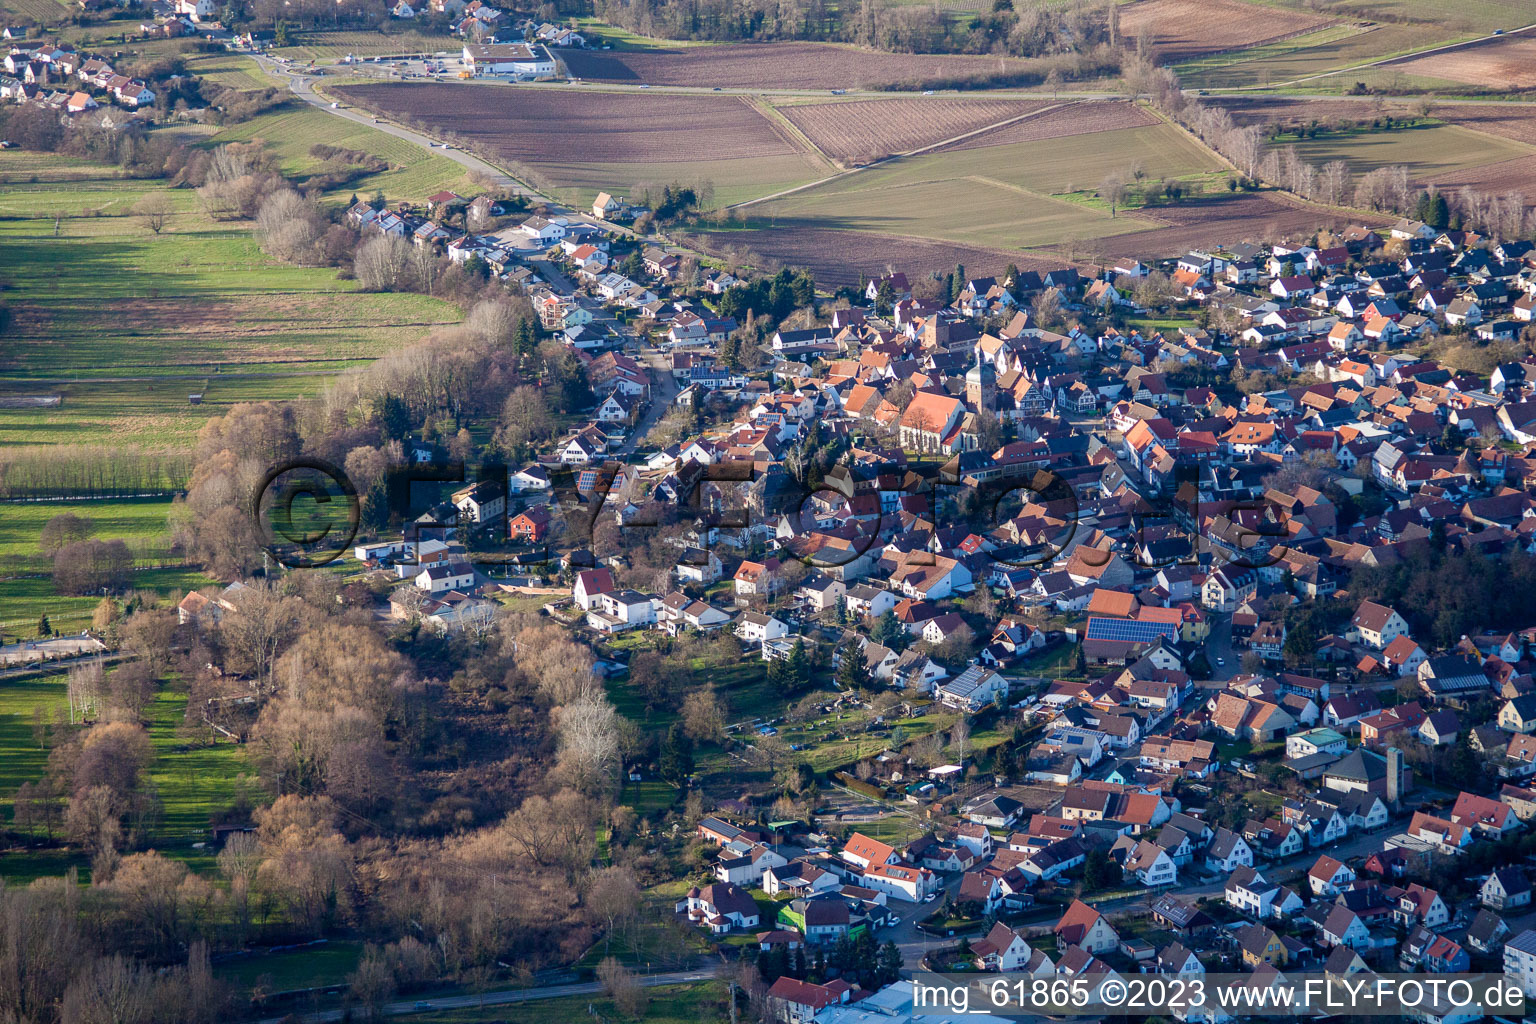 District Billigheim in Billigheim-Ingenheim in the state Rhineland-Palatinate, Germany from above